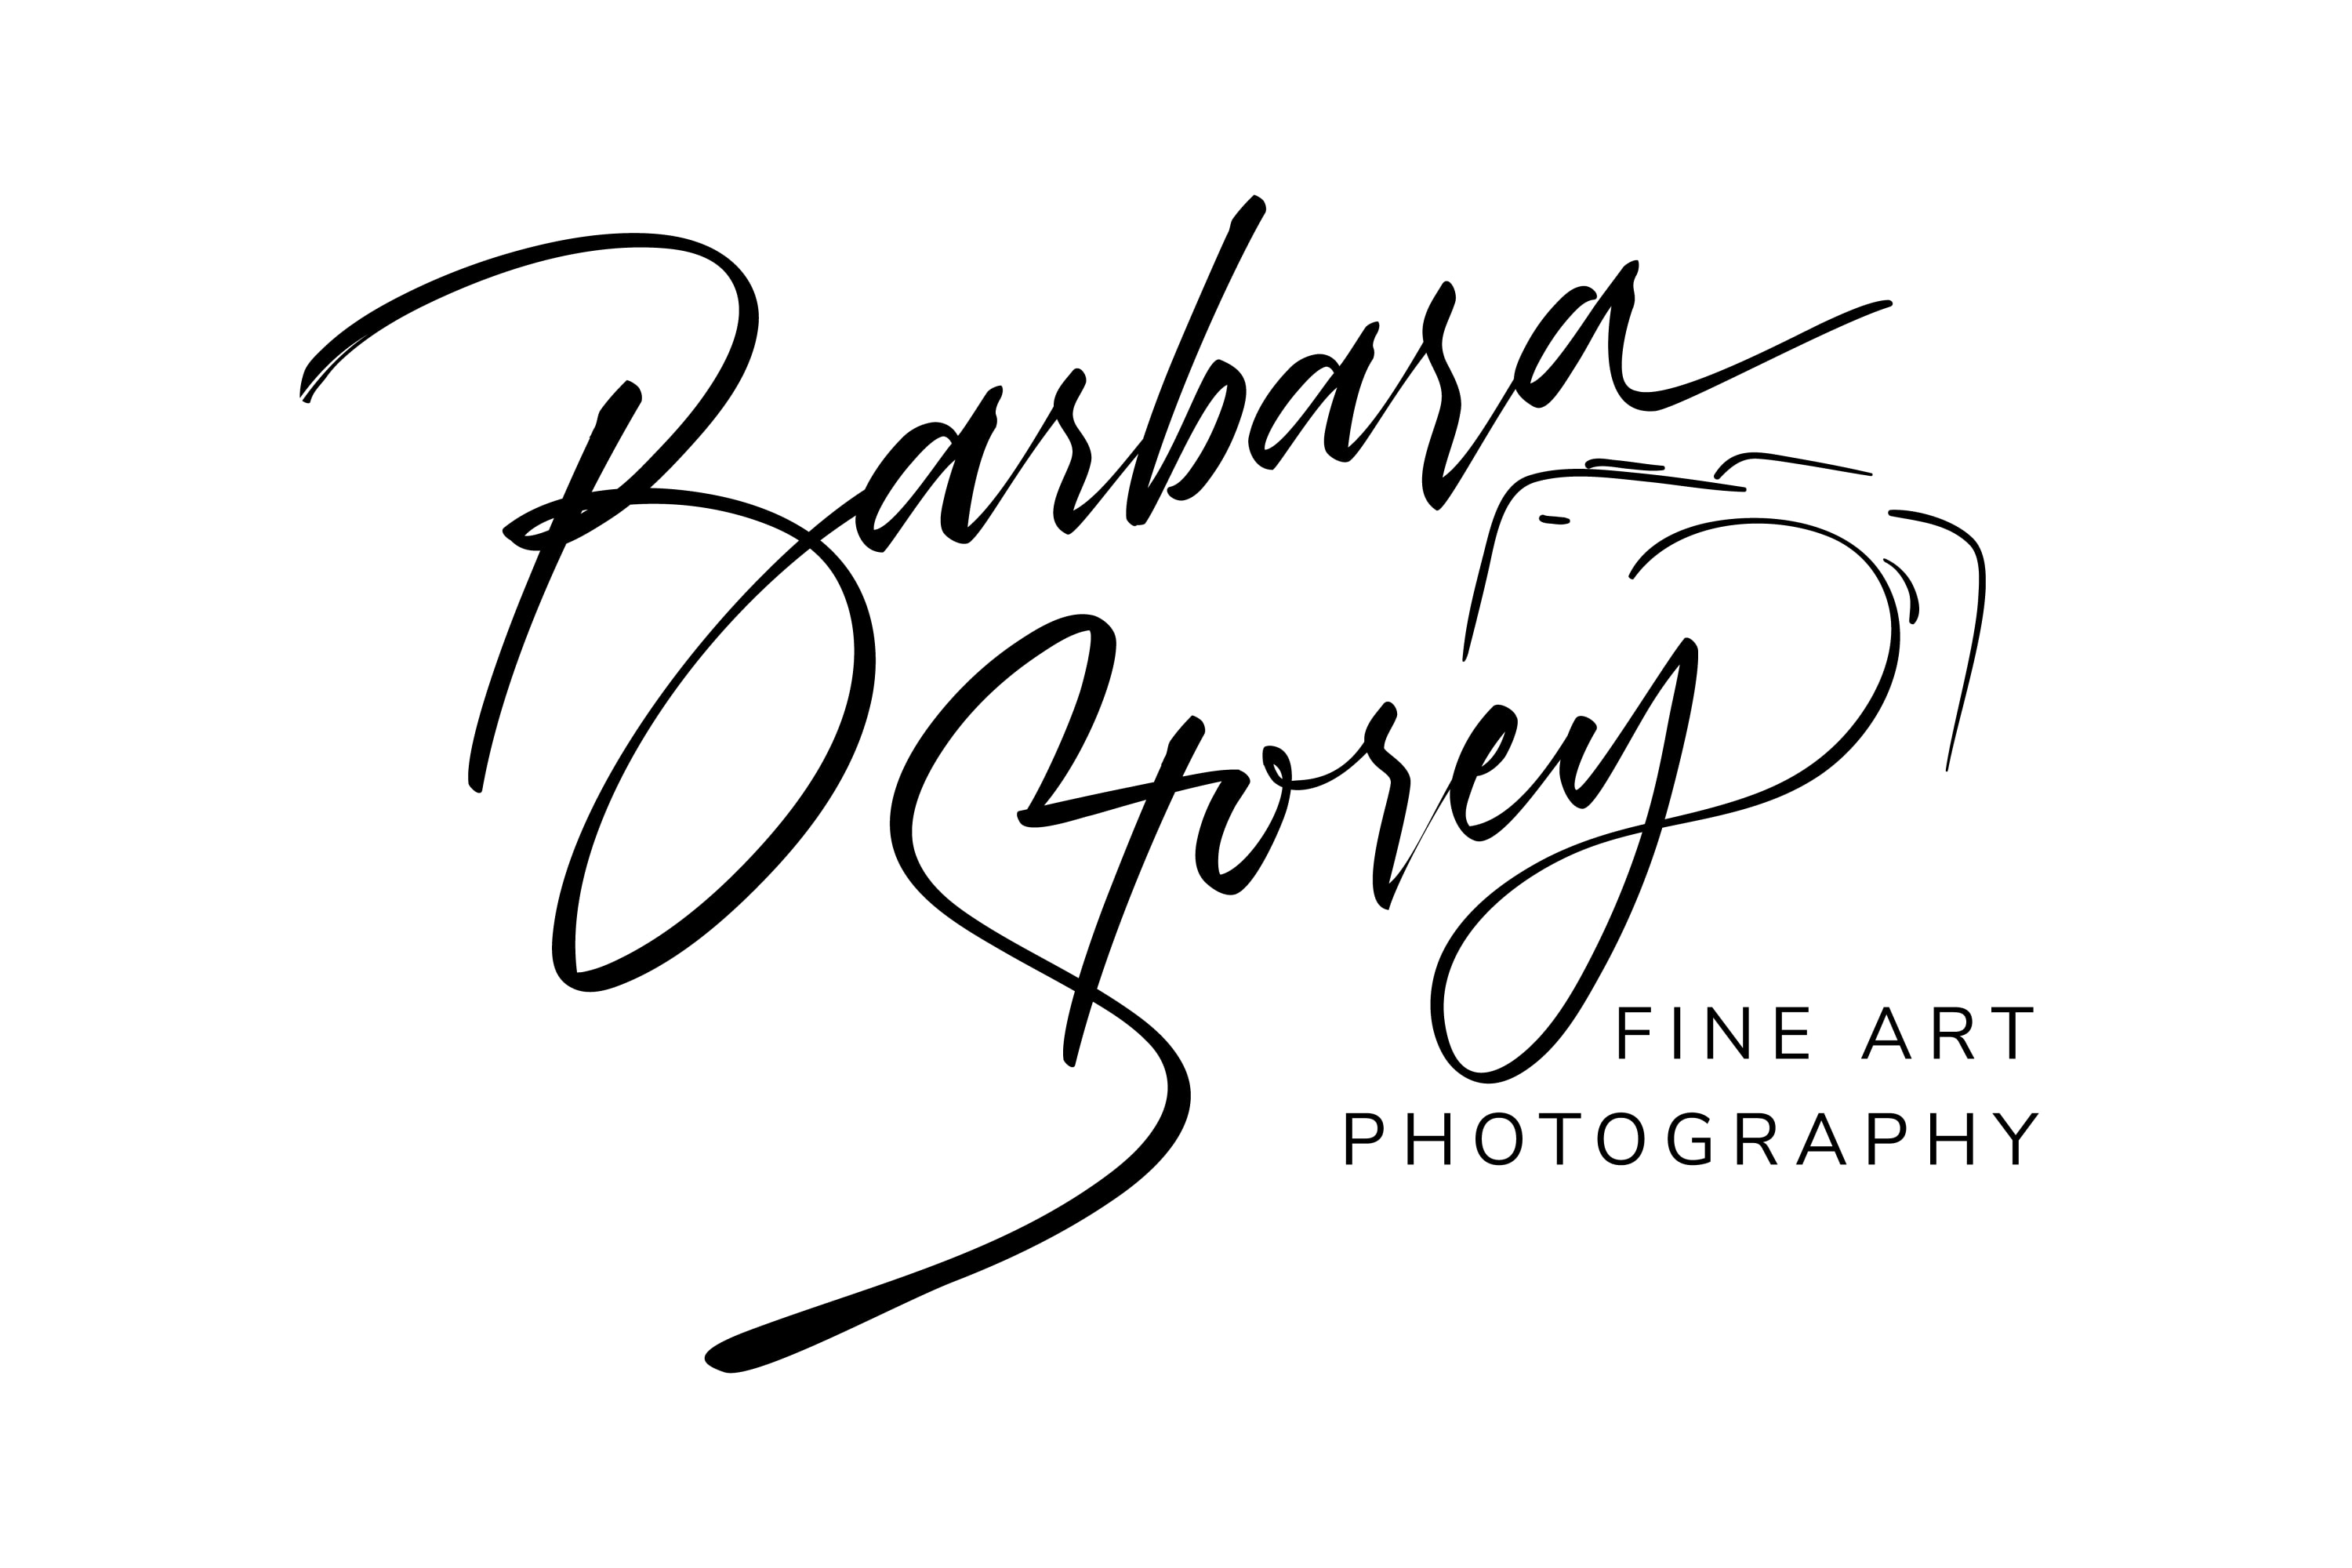 About Barbara Storey